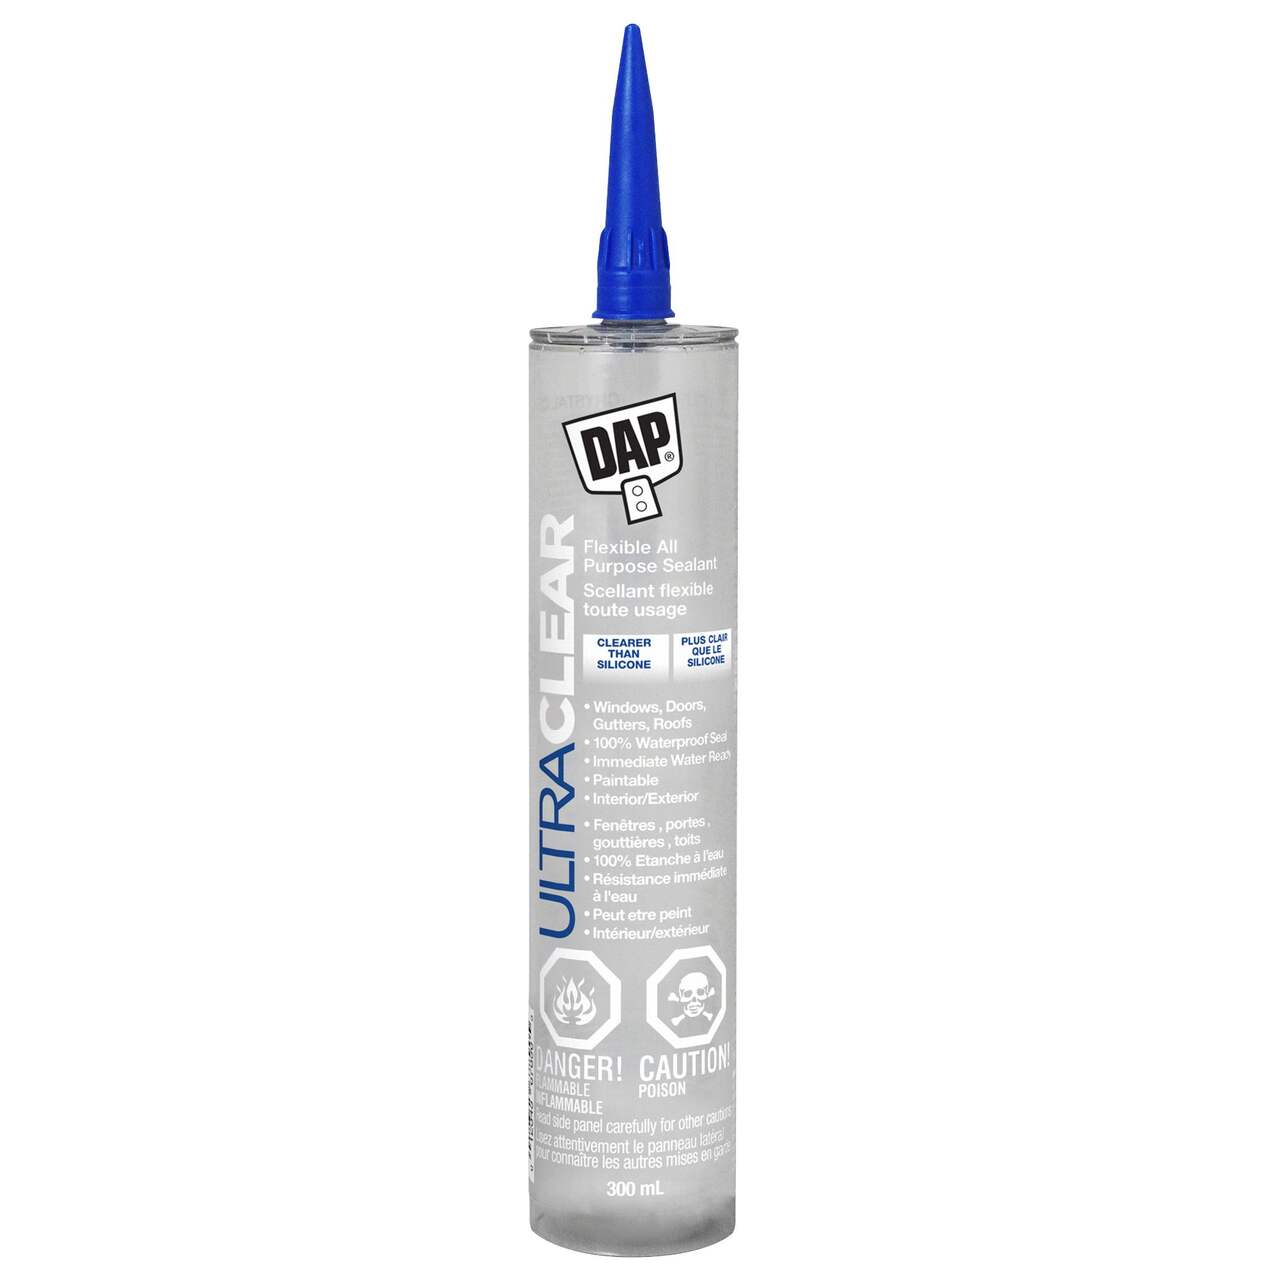 DAP 9.8-oz Clear Silicone Caulk in the Caulk department at